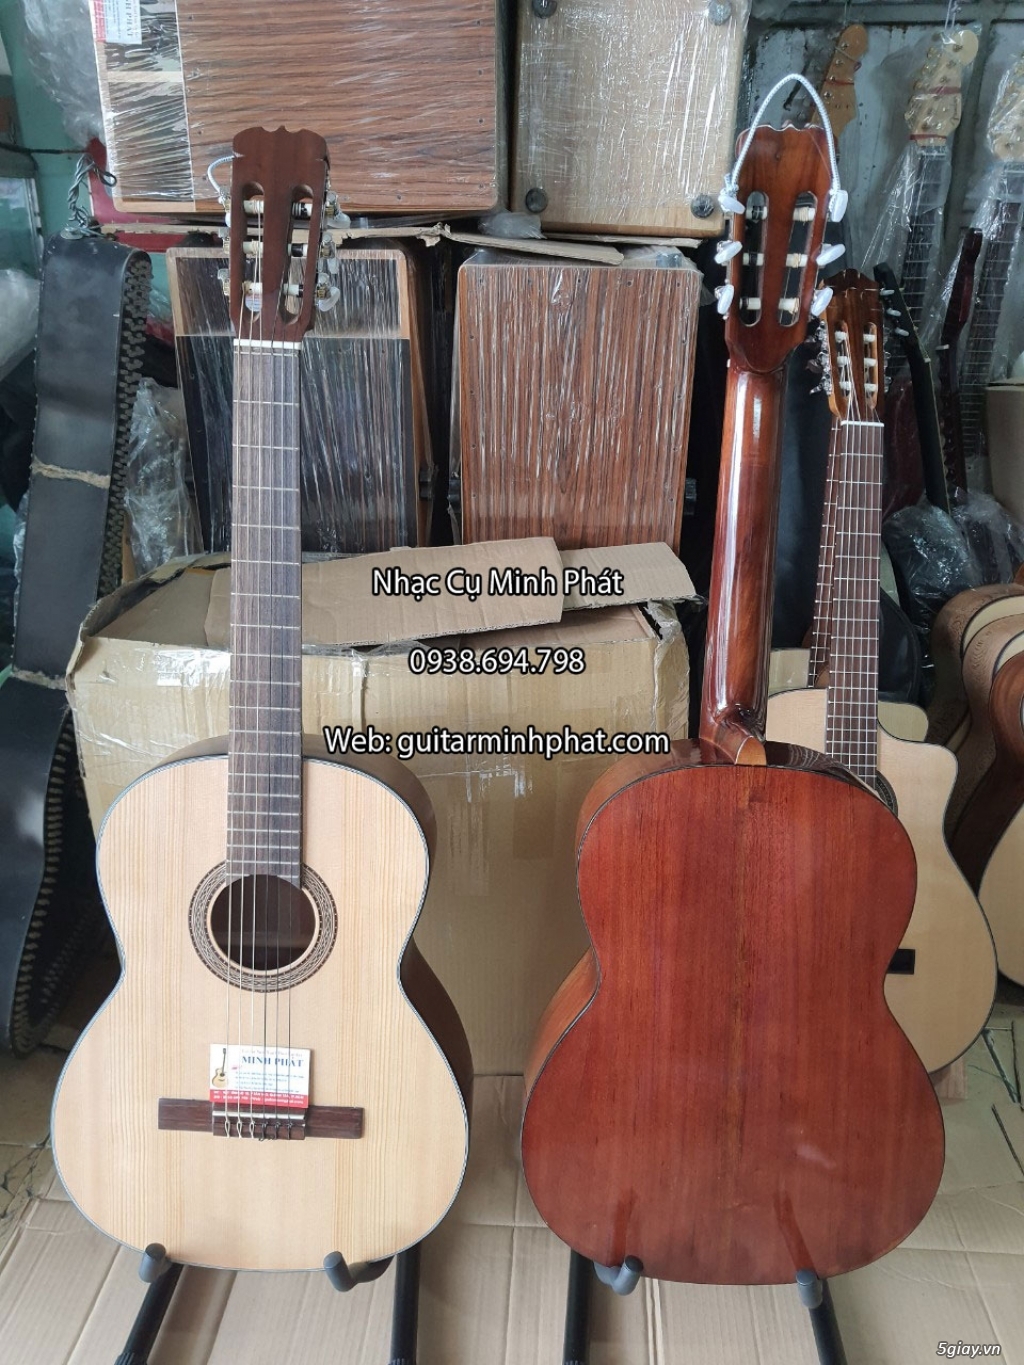 Bán đàn guitar, ukulele, kalimba giá rẻ ở quận Gò Vấp TPHCM - 18